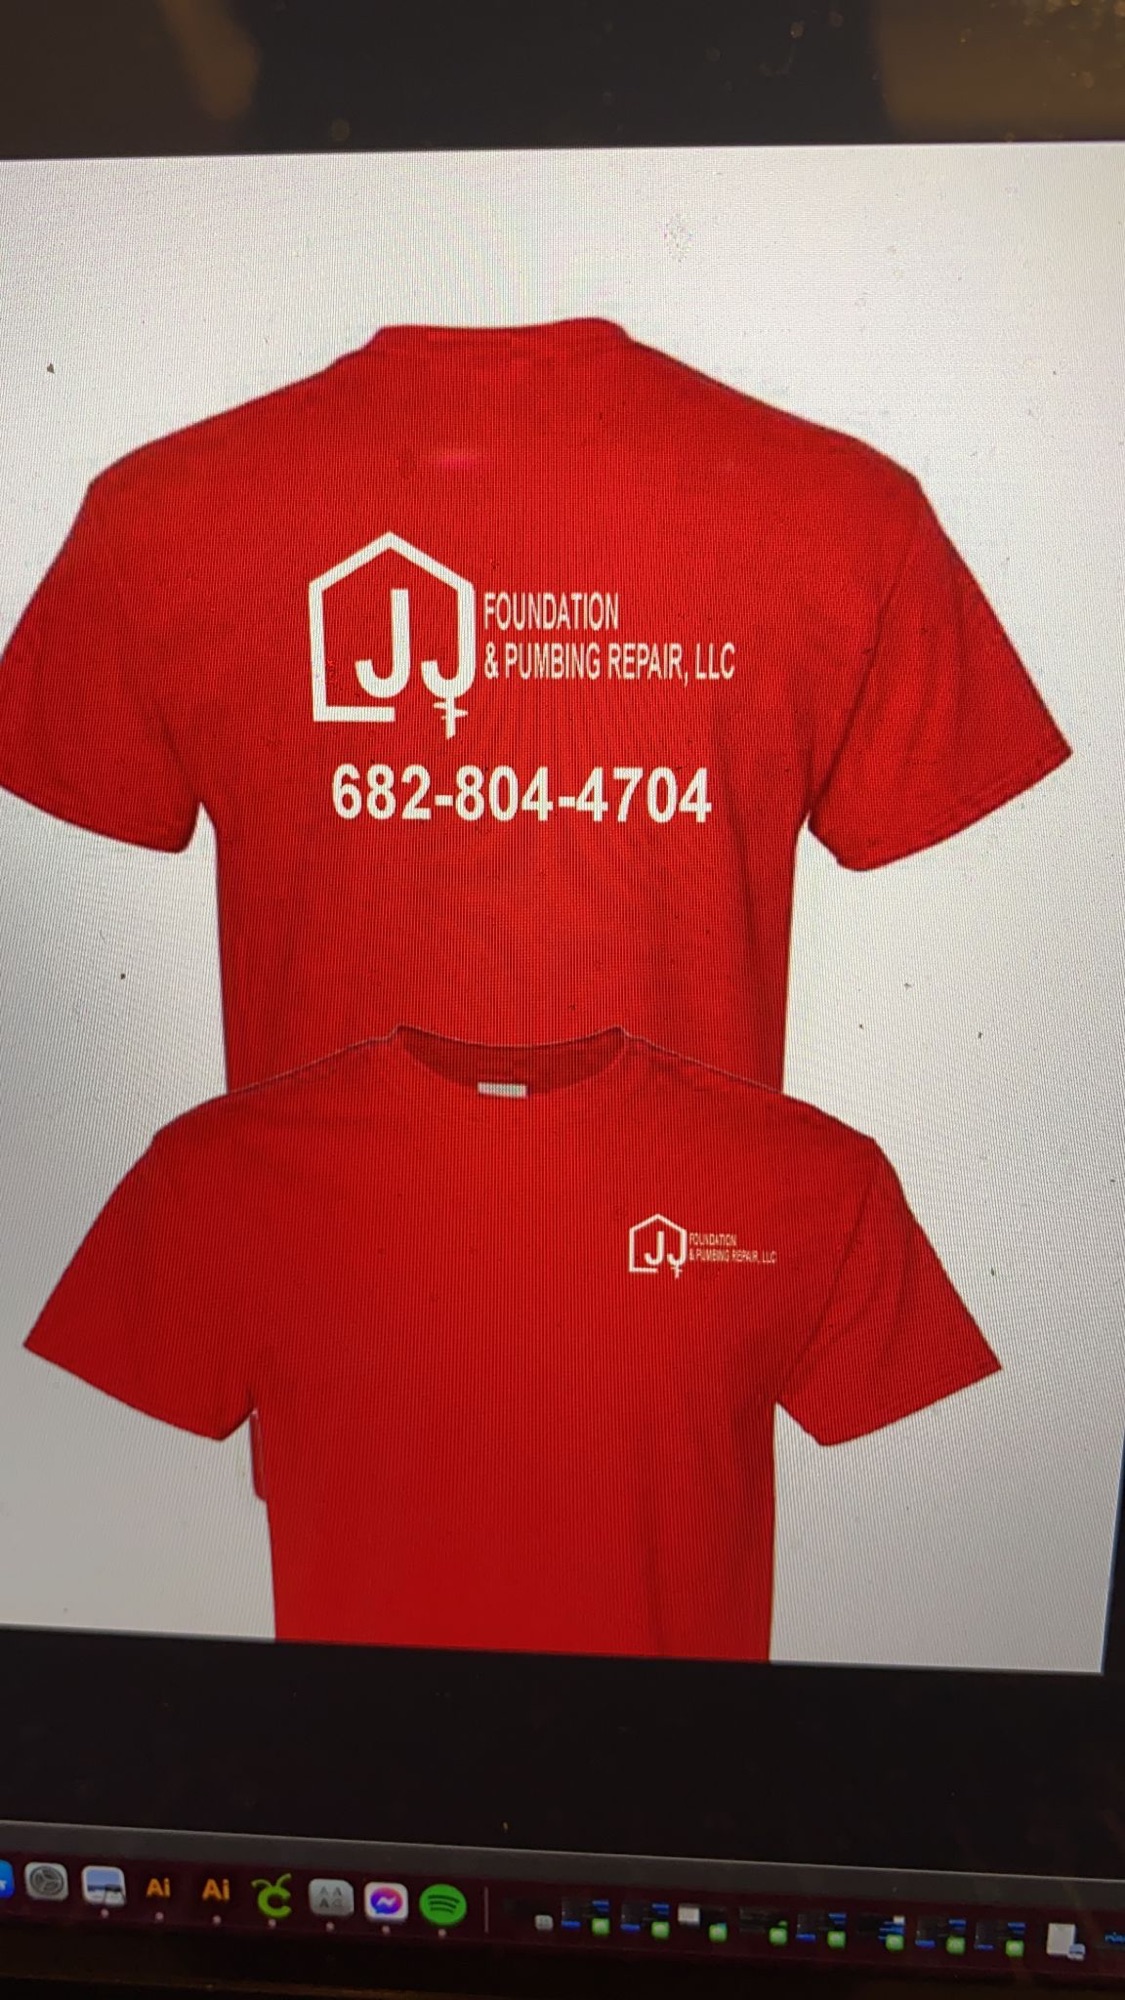 LJJ Foundation and Plumbing Repair, LLC Logo